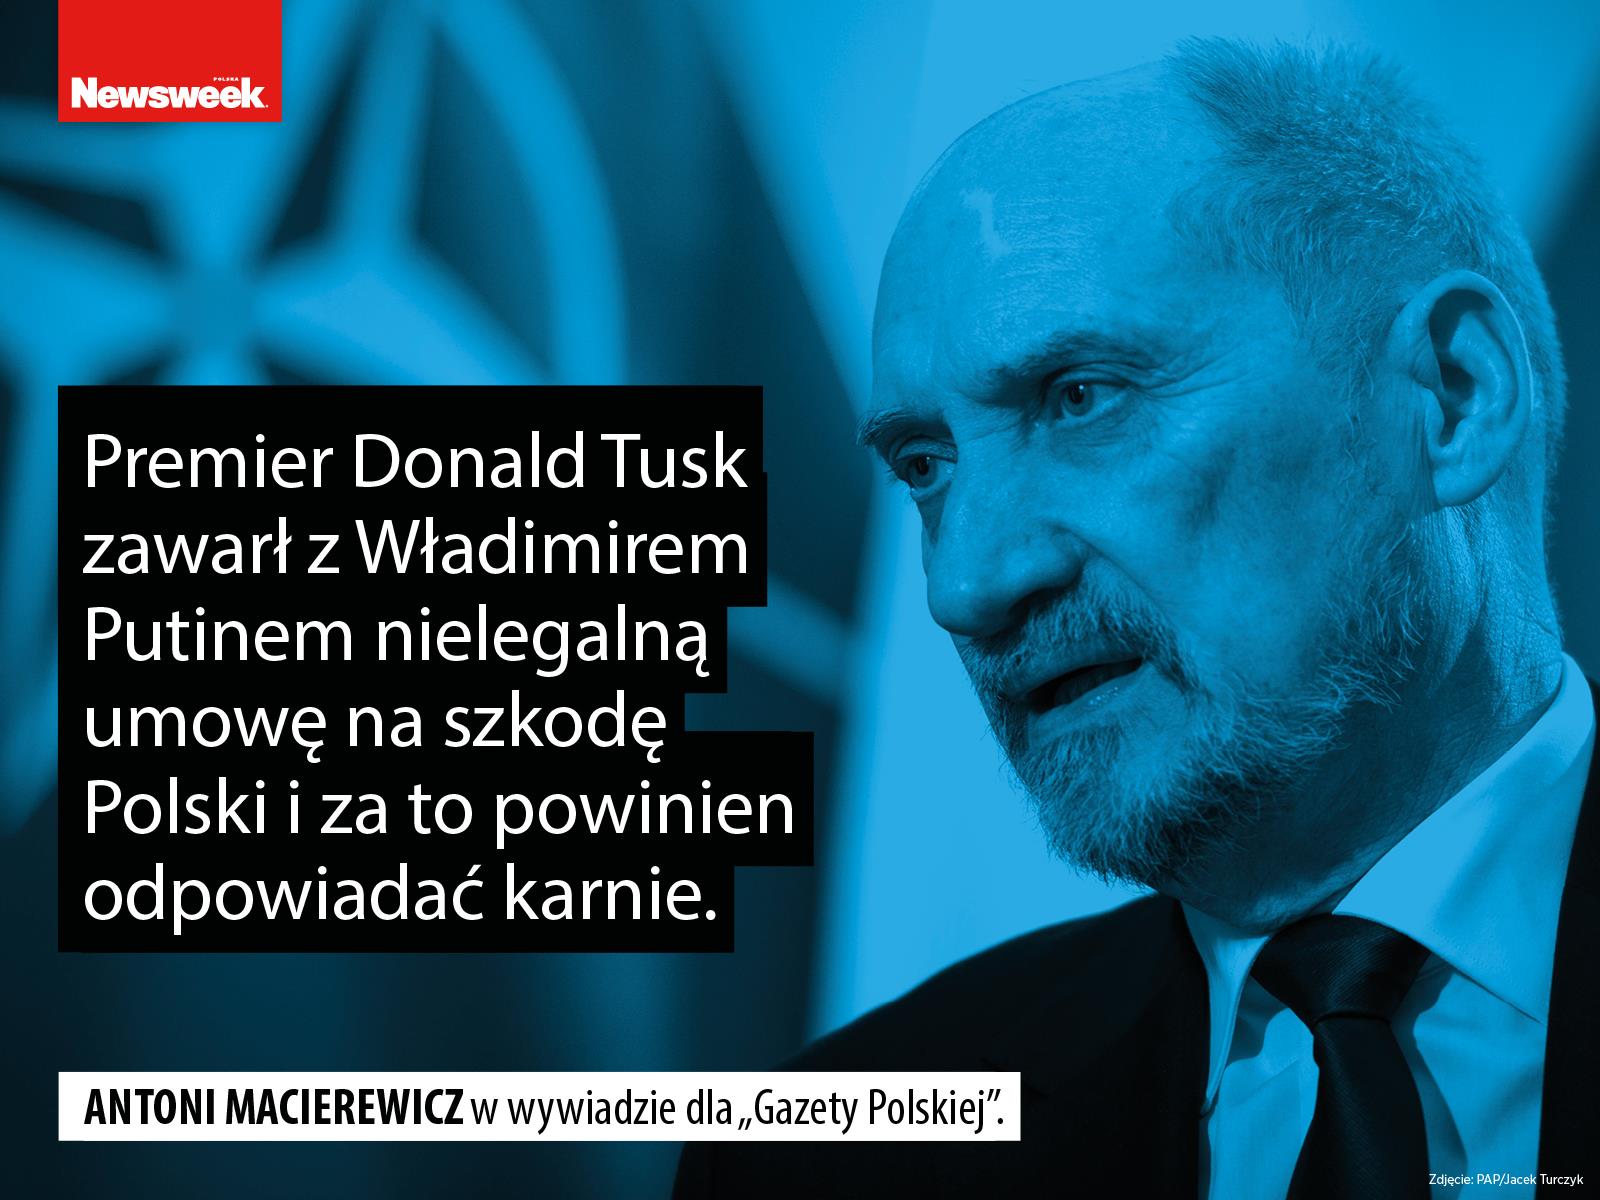 Antoni Macierewicz polityka MON Prawo i Sprawiedliwość PiS